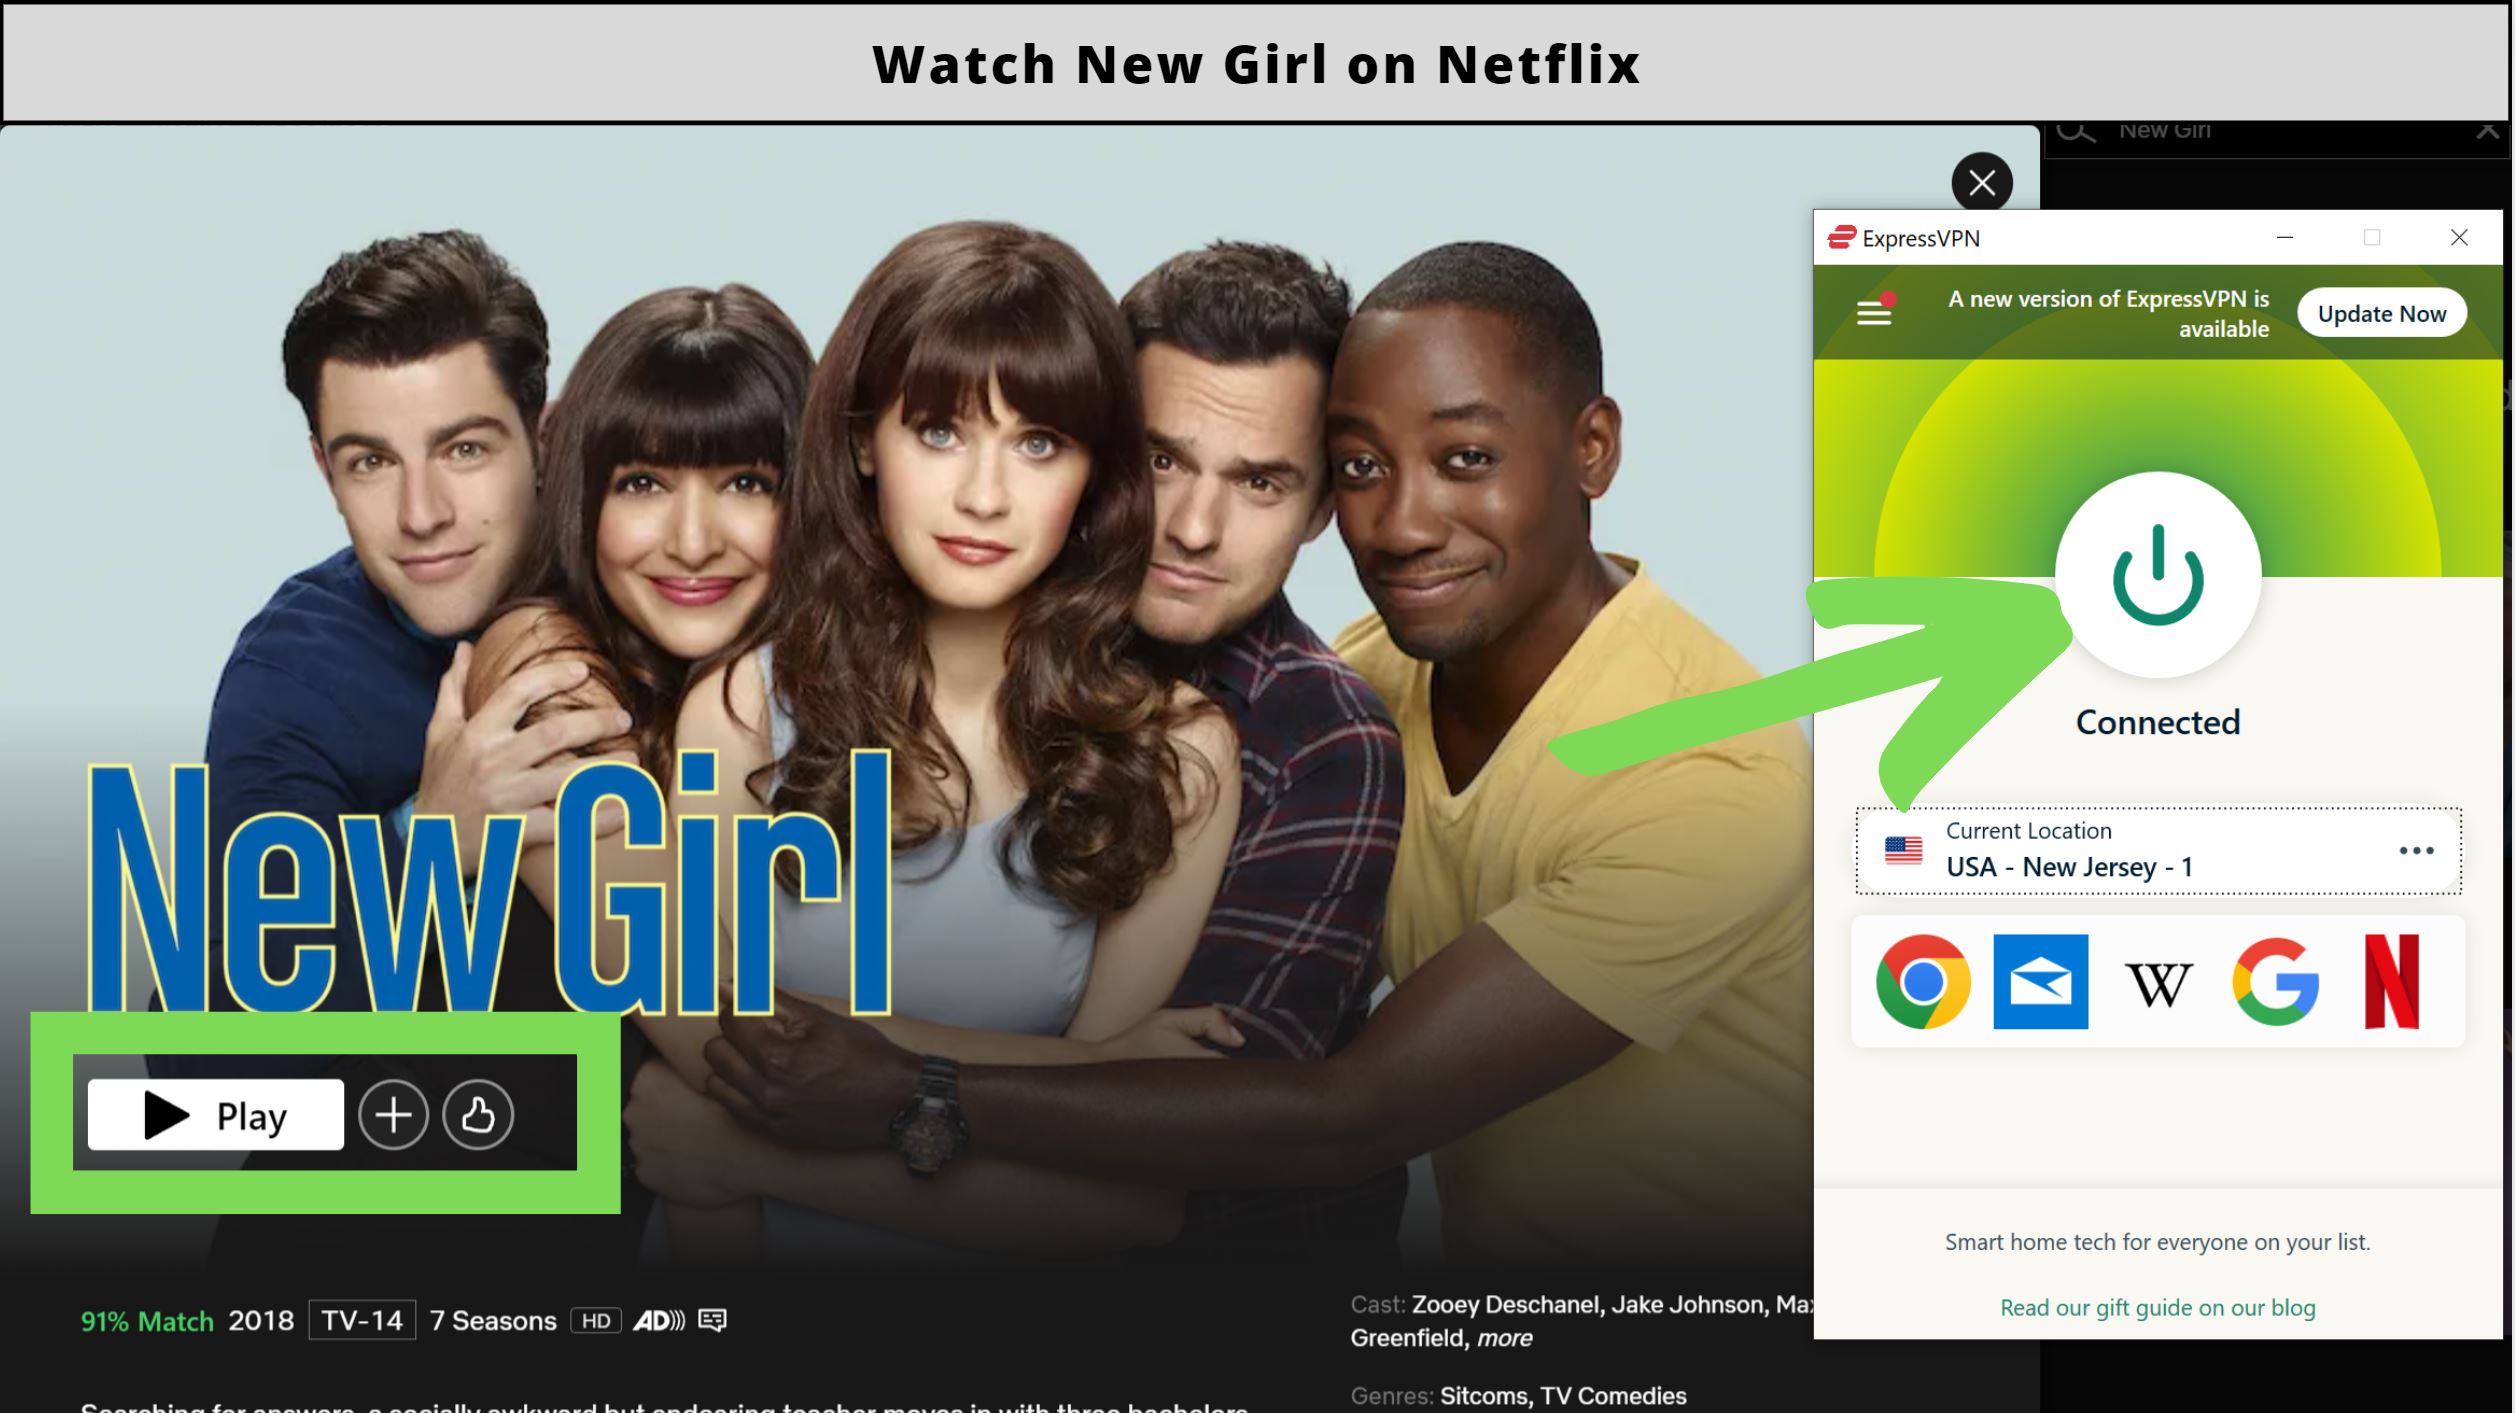 Is New Girl on Netflix?